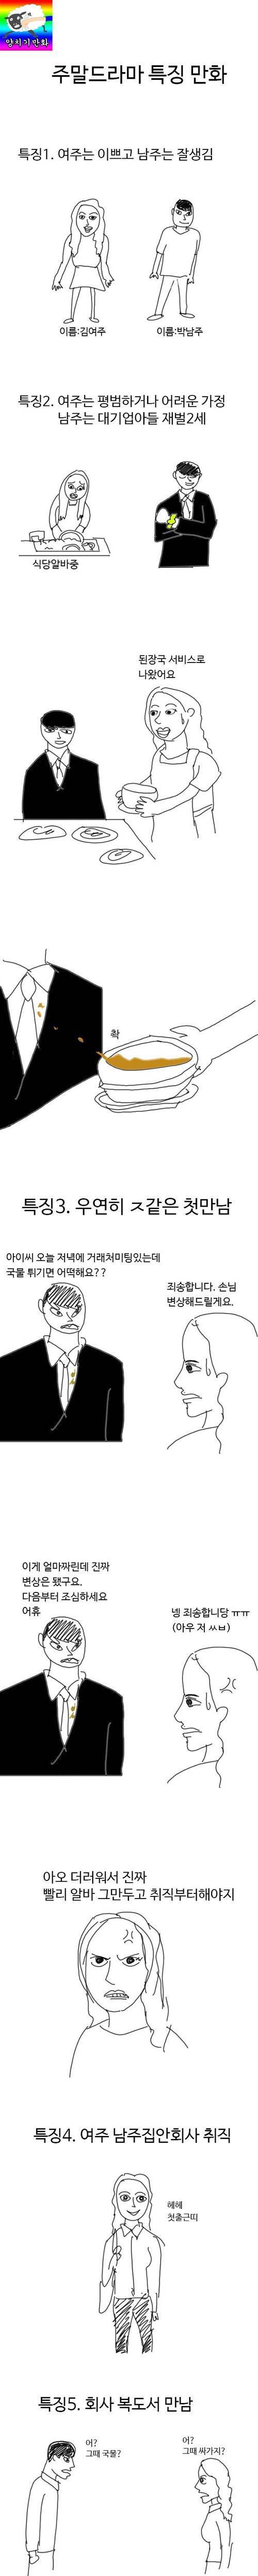 [스압]한국 드라마 특징.jpg